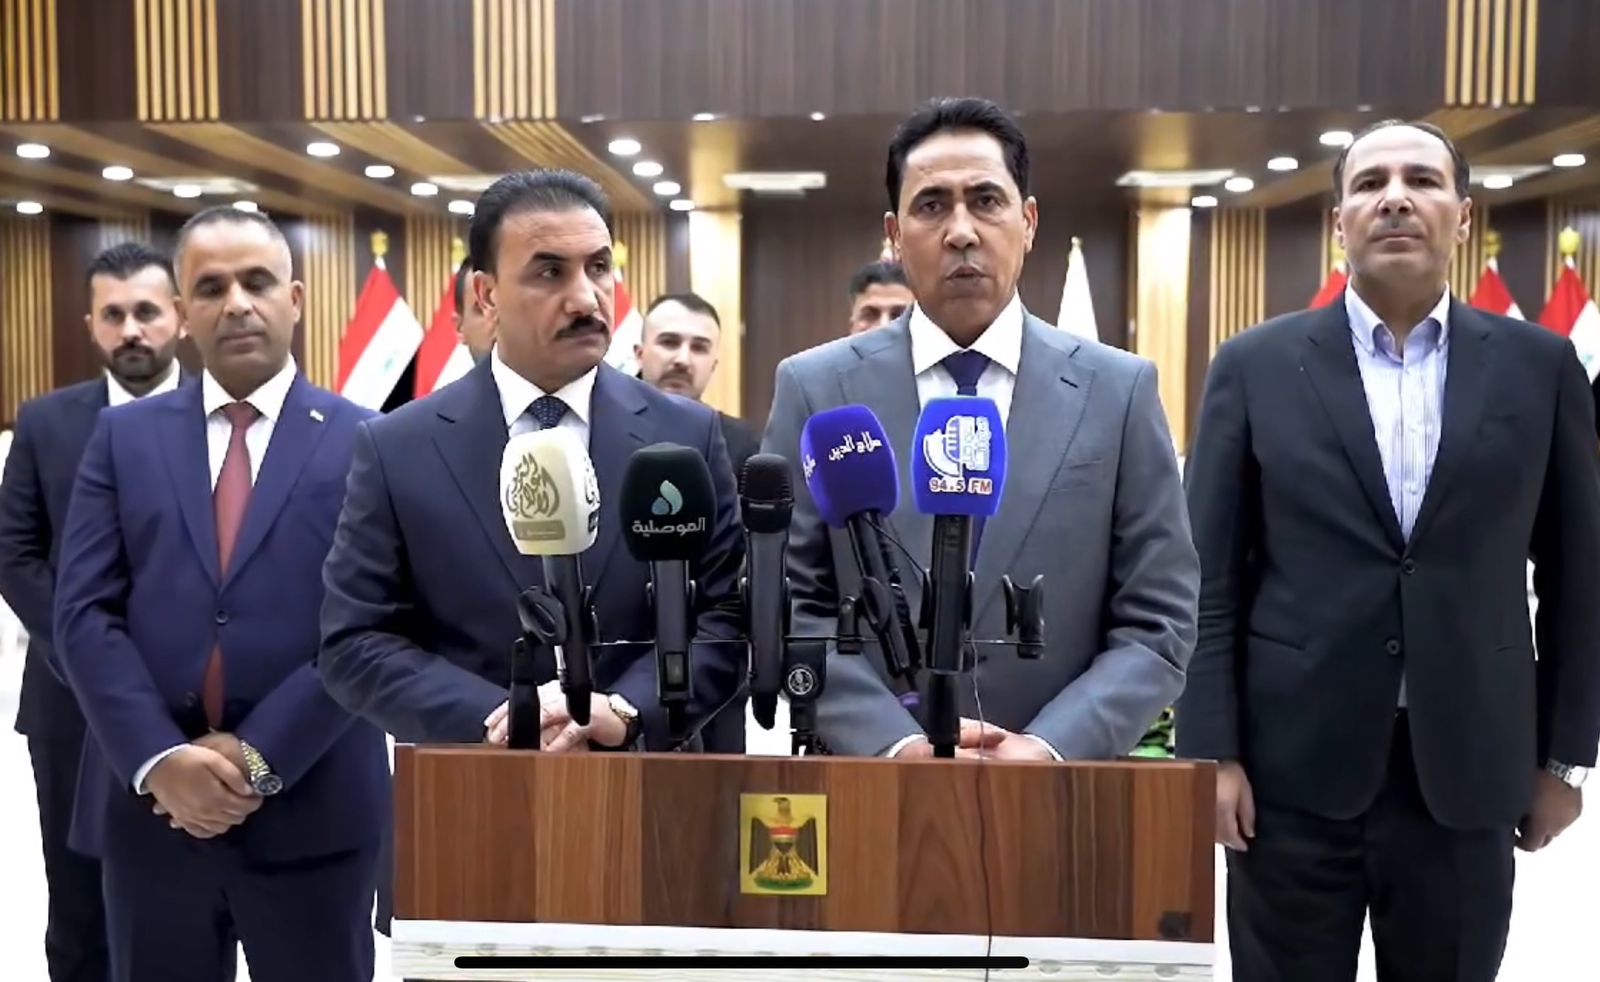 وزير التربية يعلن إنجاز قرابة 600 مدرسة في نينوى بعد التحرير